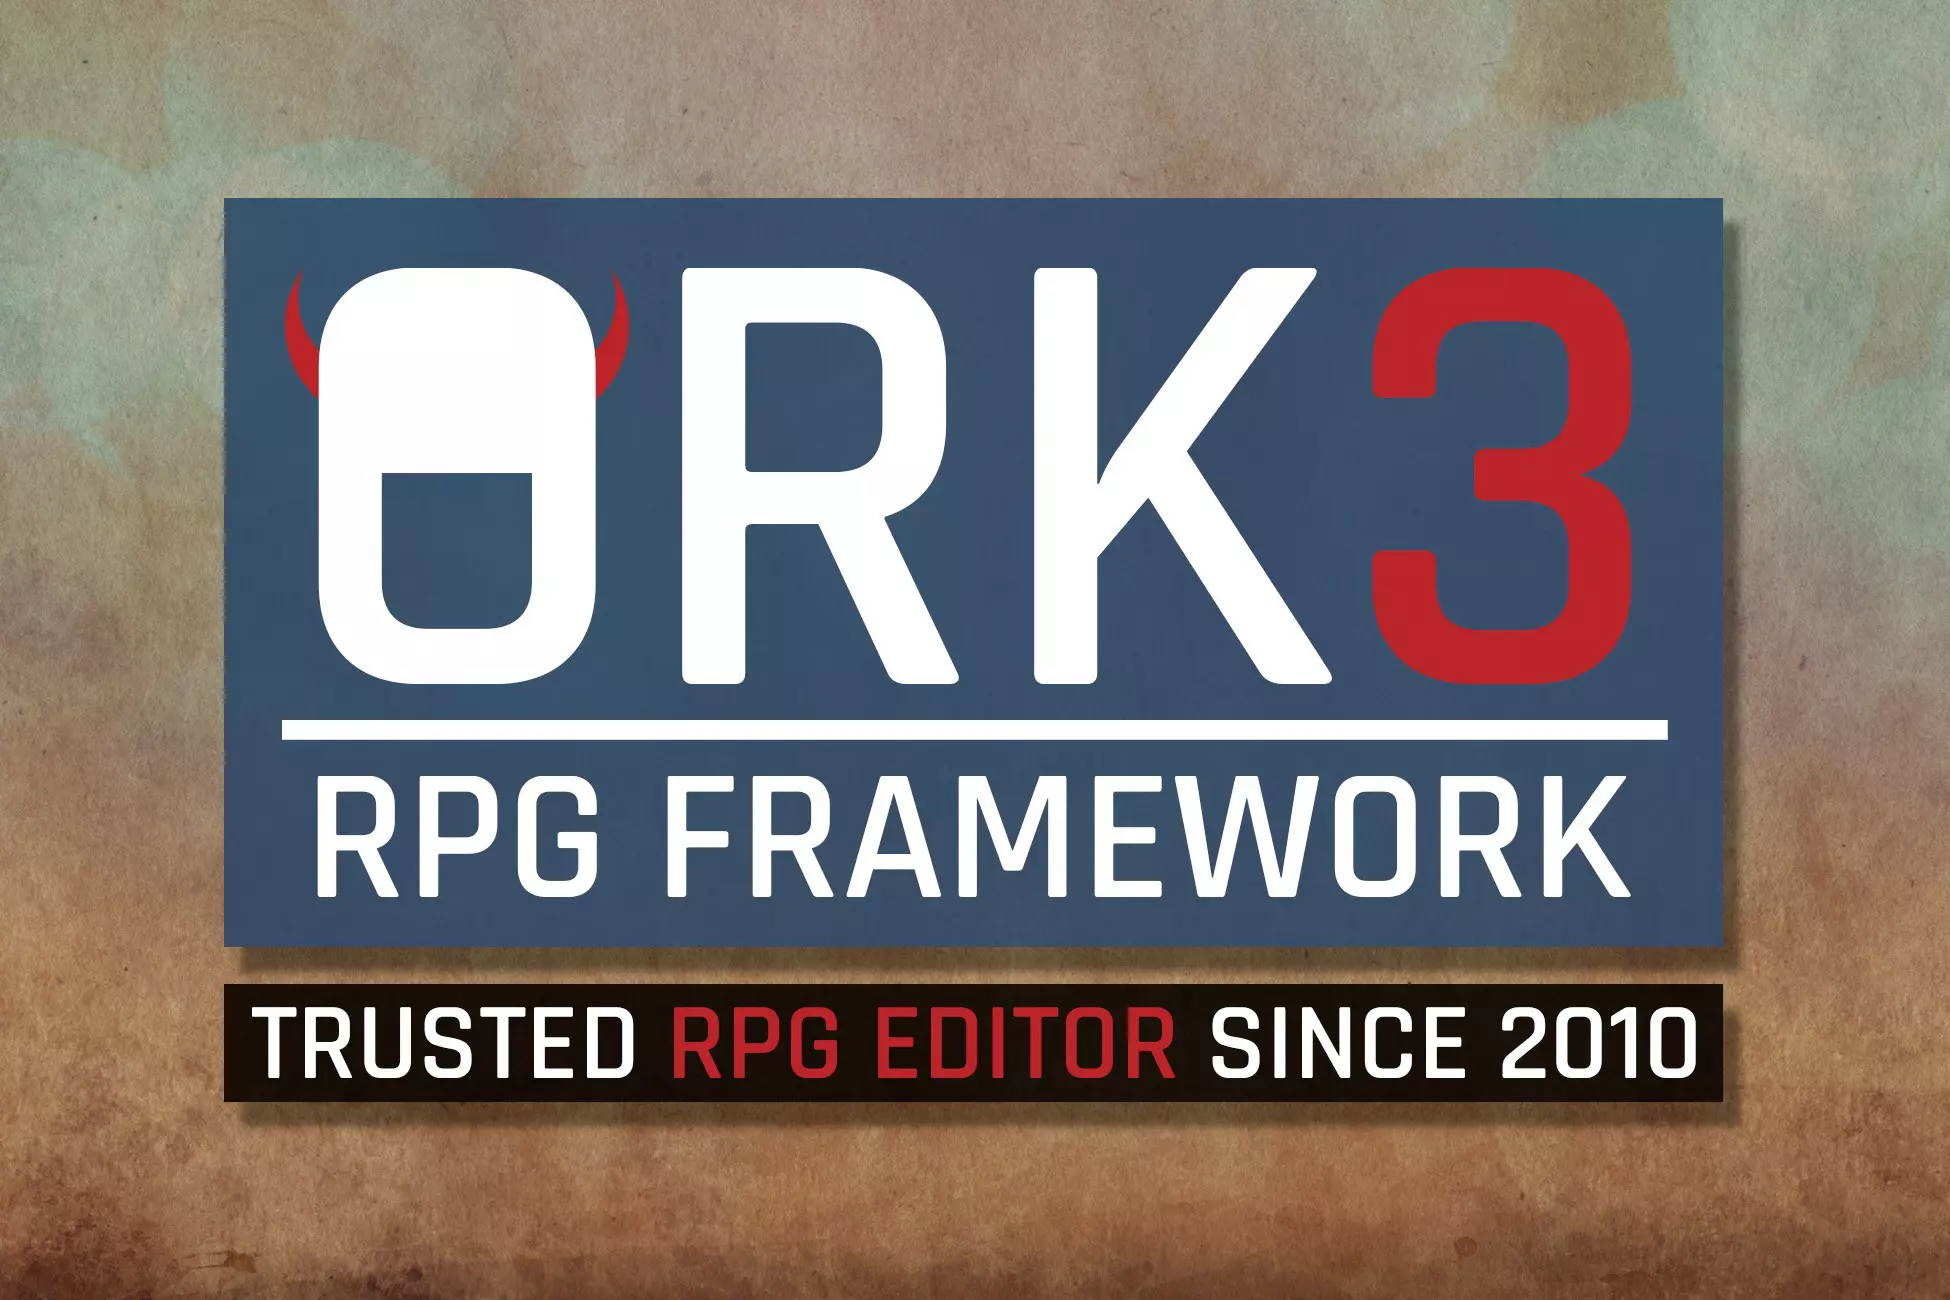 ork framework 3 free download